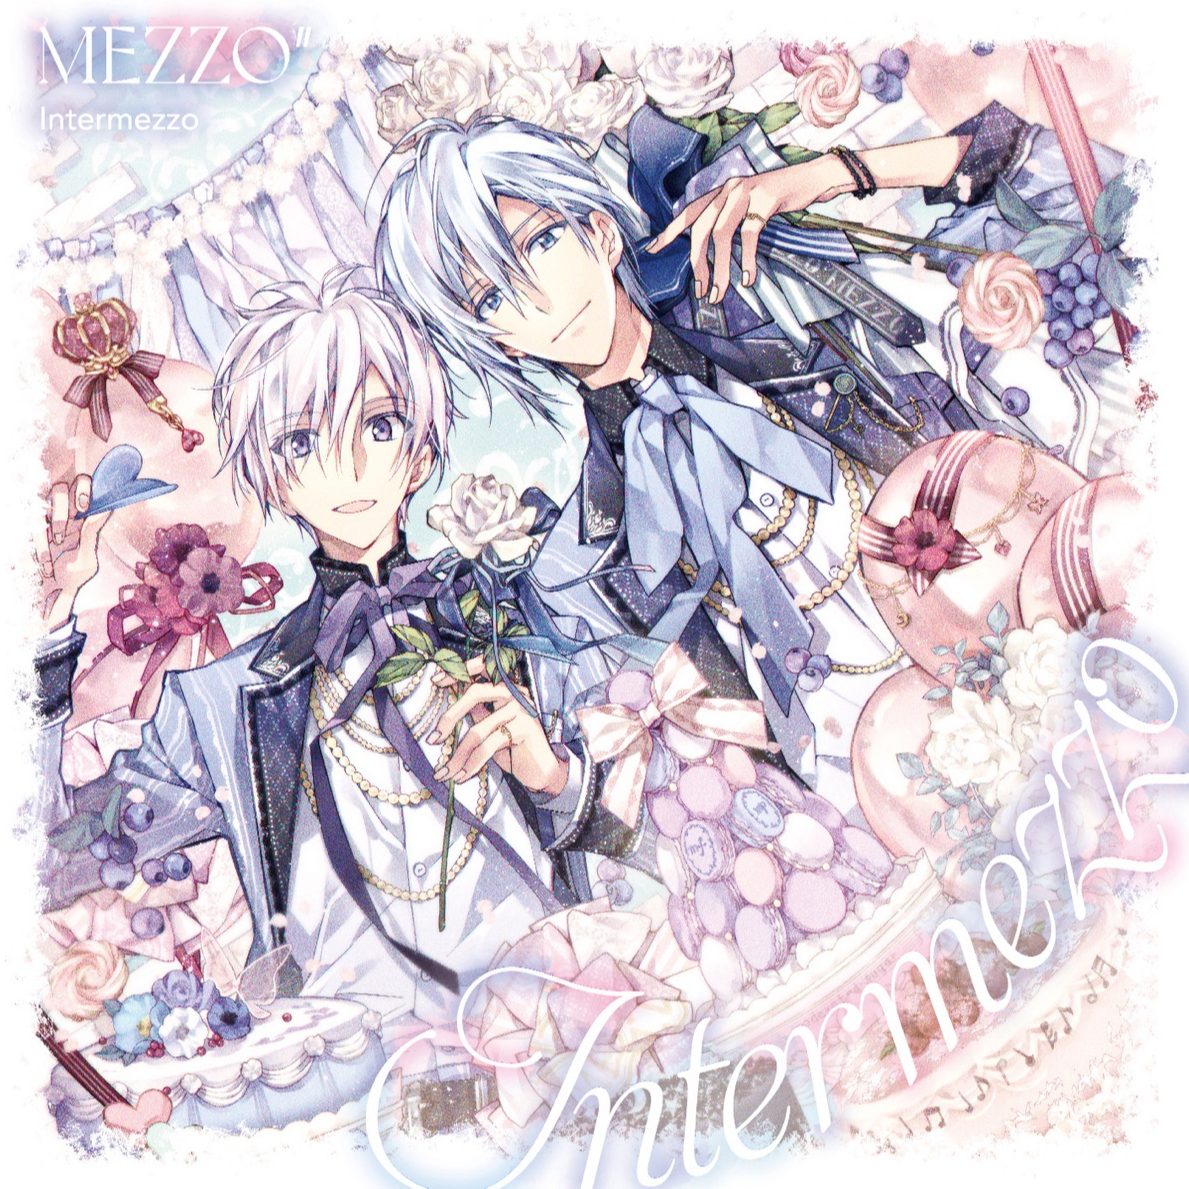 未来絵歌词 歌手MEZZO”-专辑Intermezzo-单曲《未来絵》LRC歌词下载